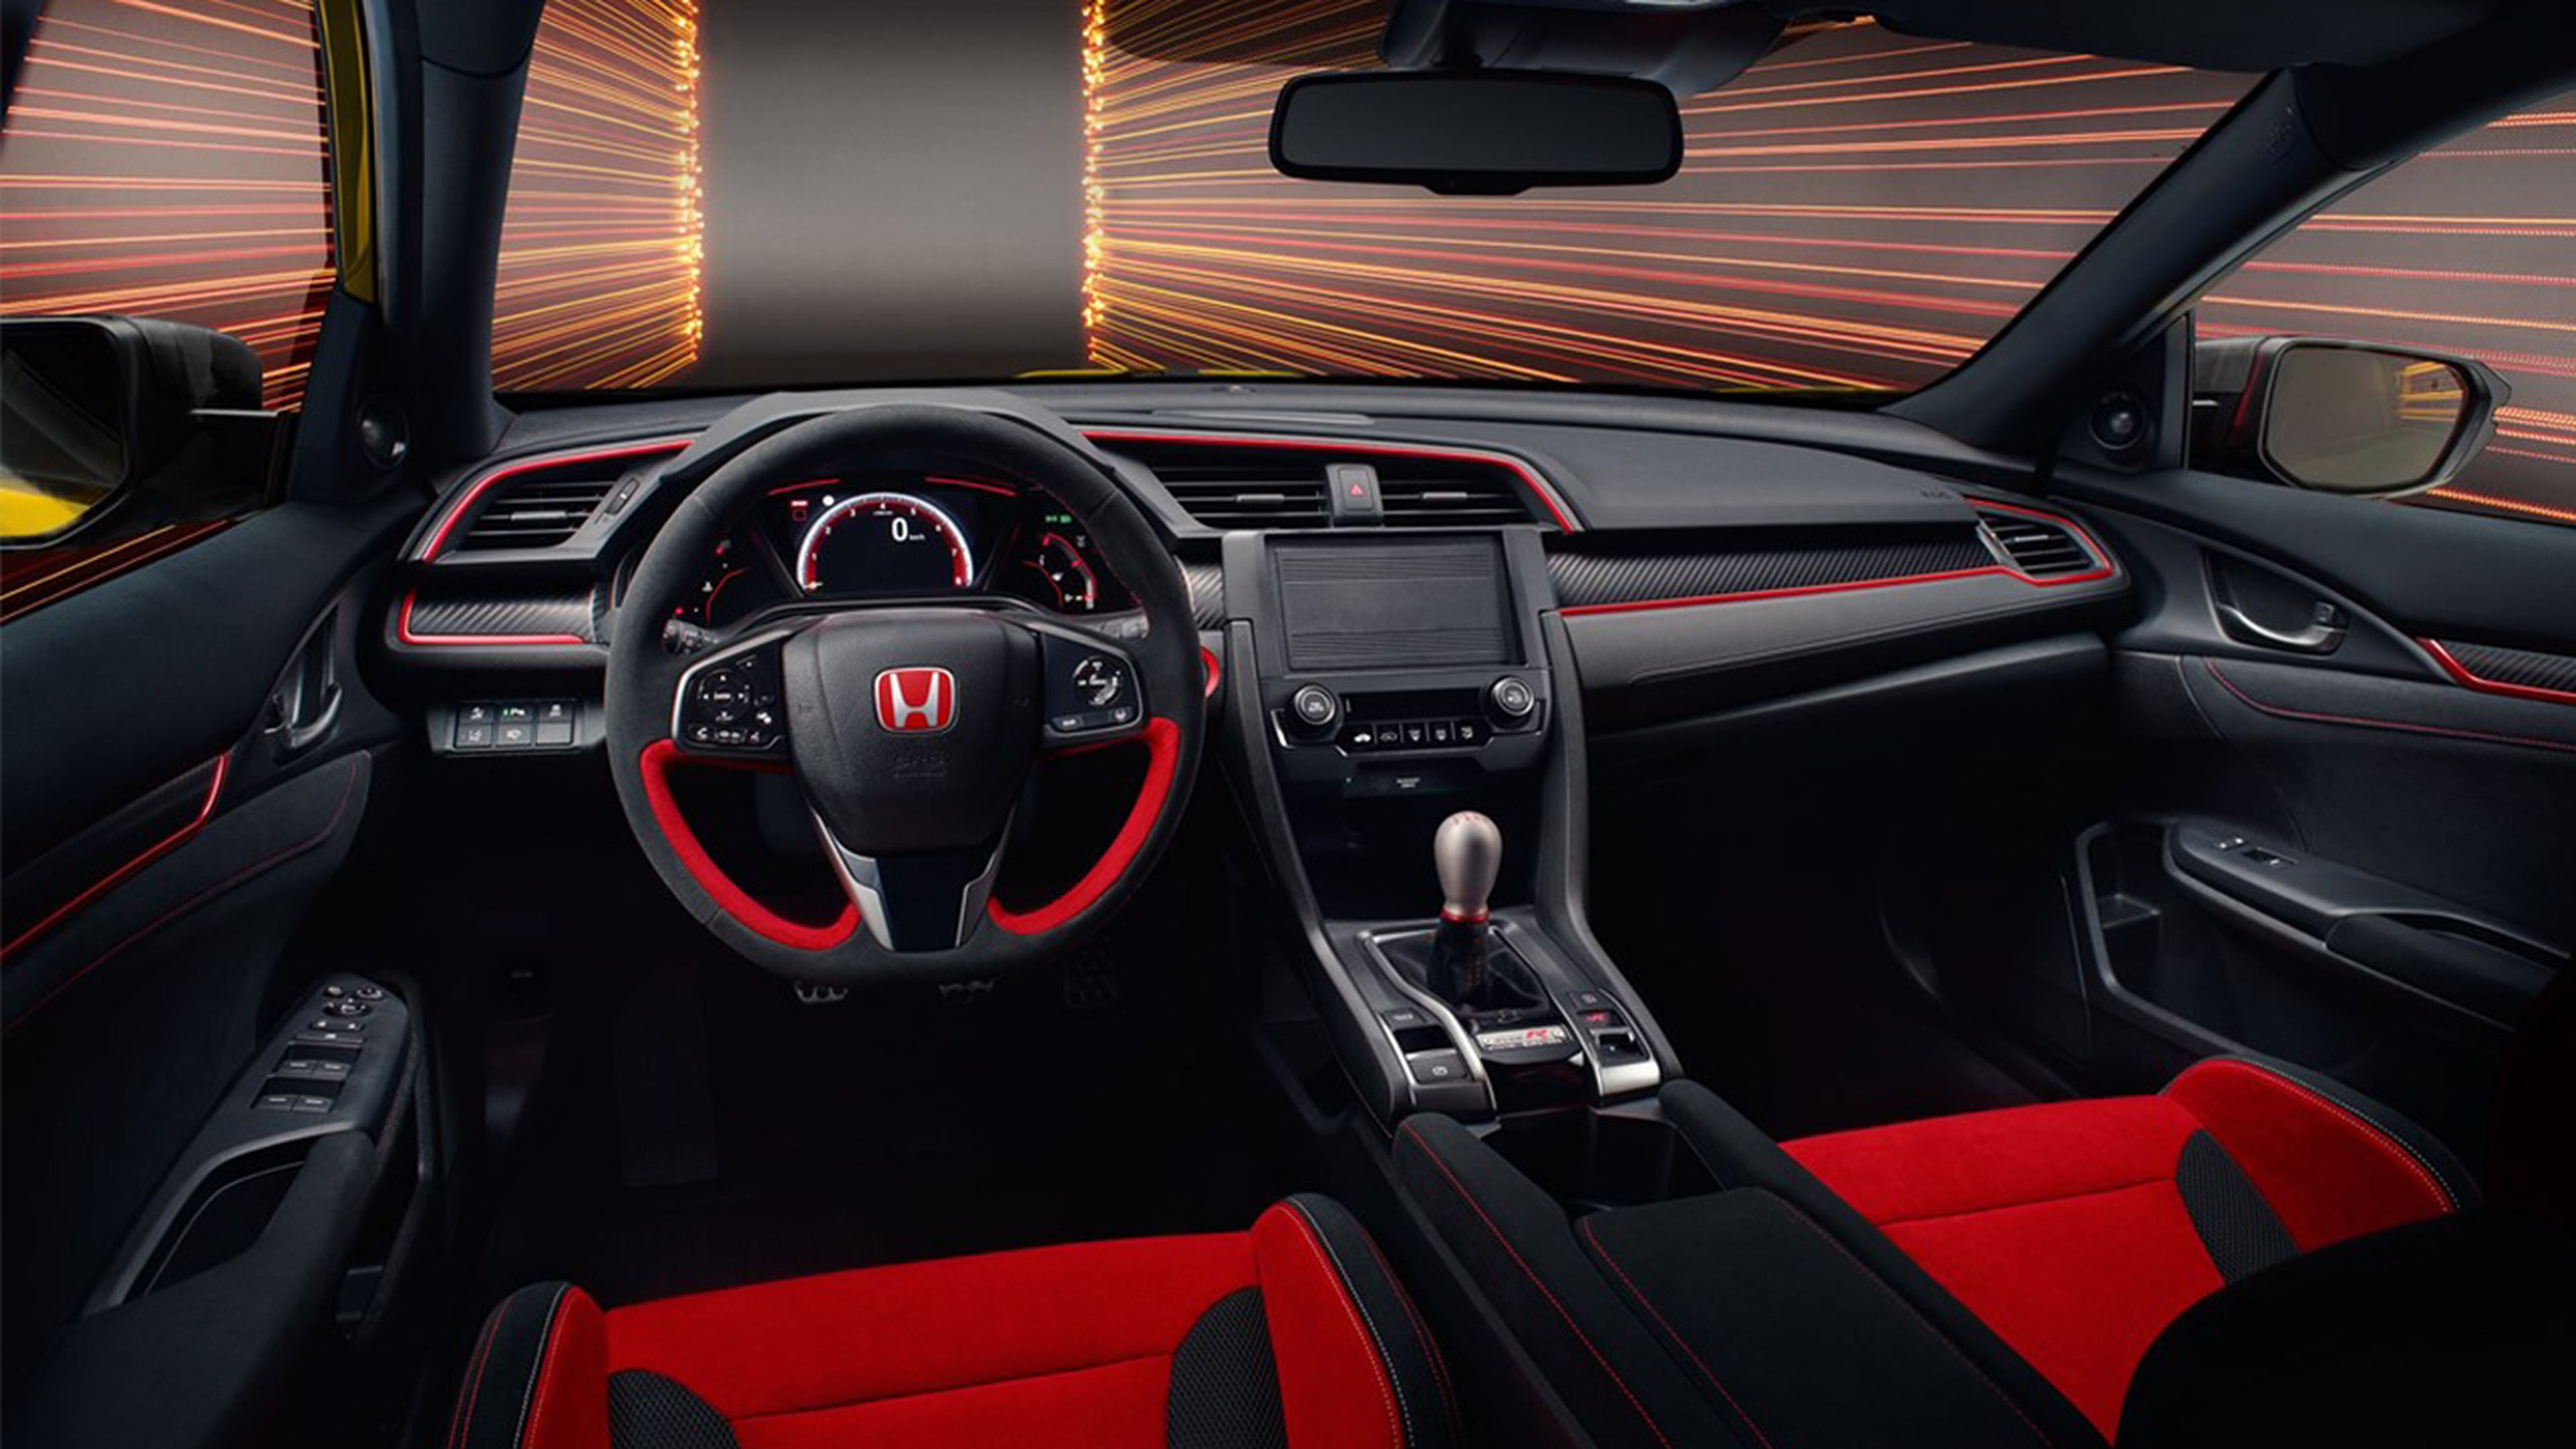 Honda Civic Type R 2020 interior